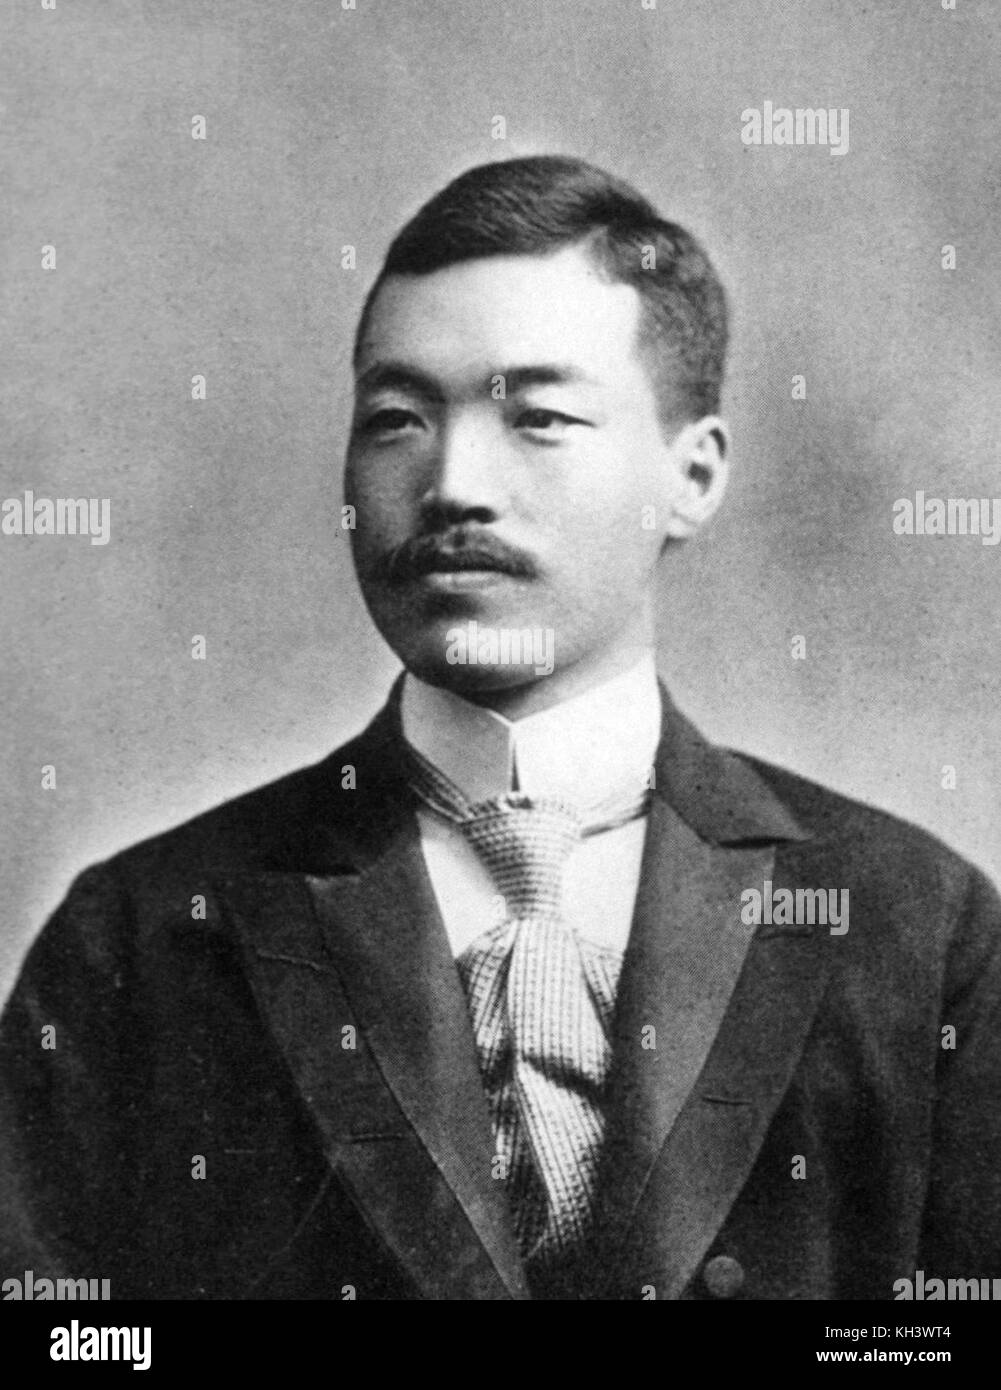 Noguchi hideyo noguchi hideyo noguchi seisaku, bactériologiste japonais, qui en 1911 a découvert l'agent de la syphilis comme la cause d'une maladie paralytique progressif Banque D'Images